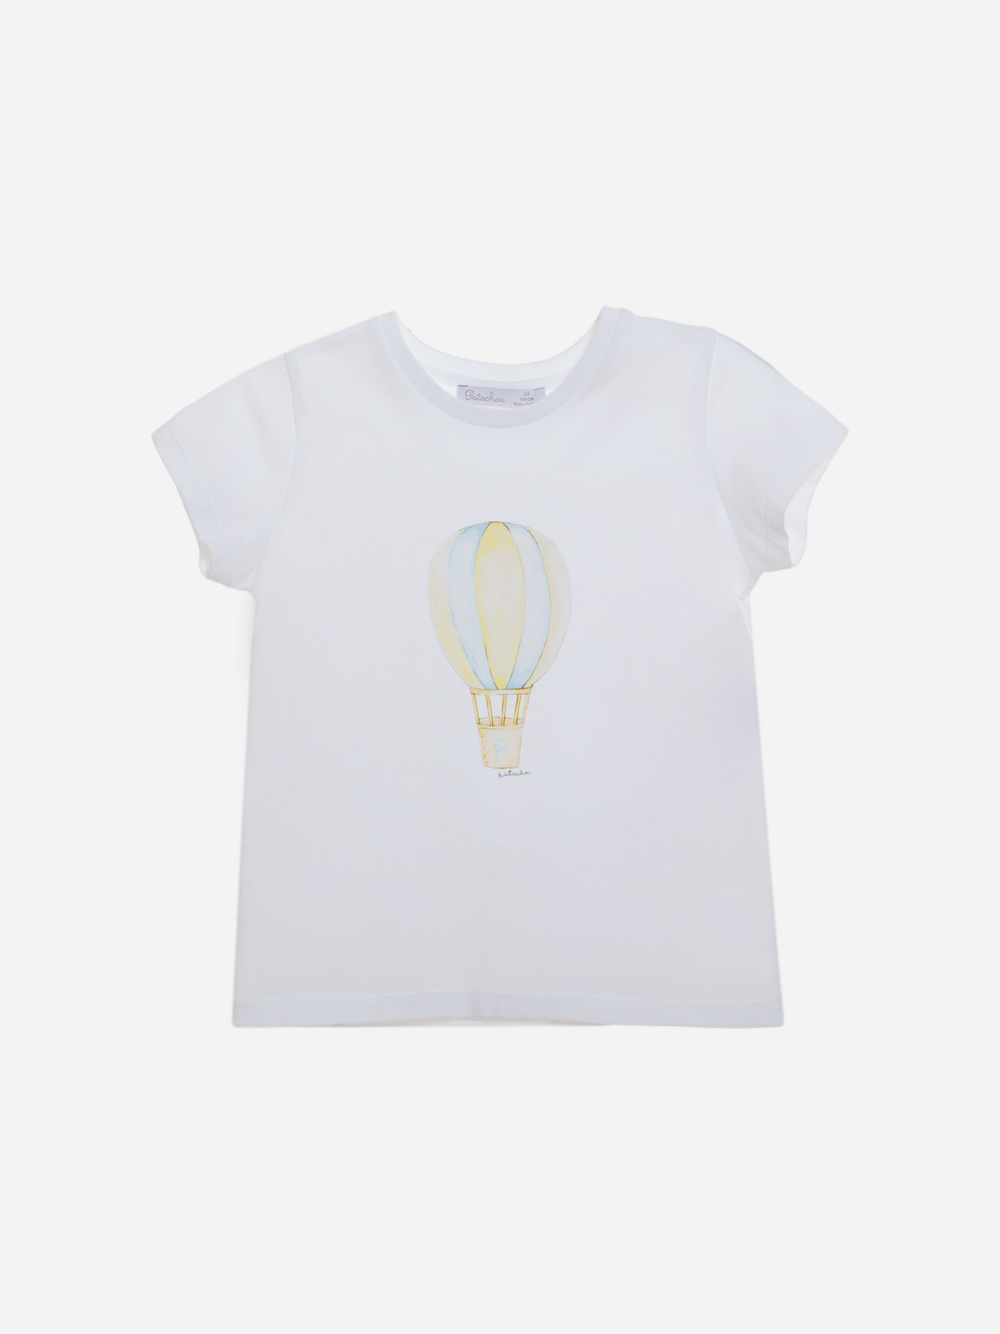 T-shirt de menino com print de balão de ar quente